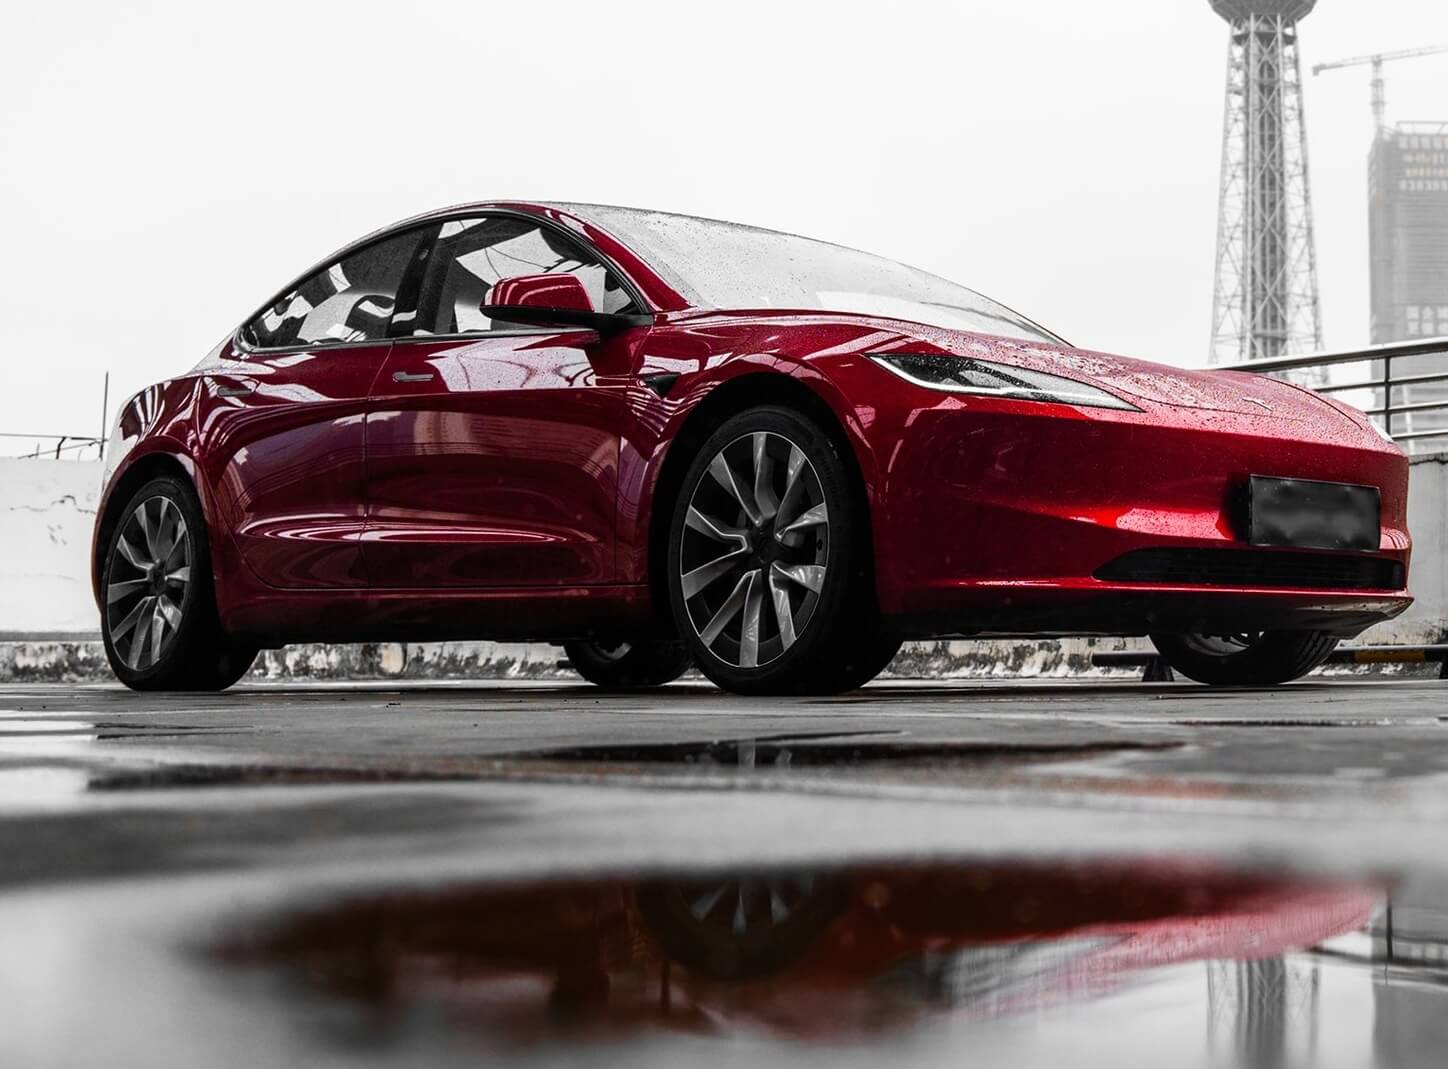 特斯拉 Model 3 是过去六个月美国搜索量最高的汽车